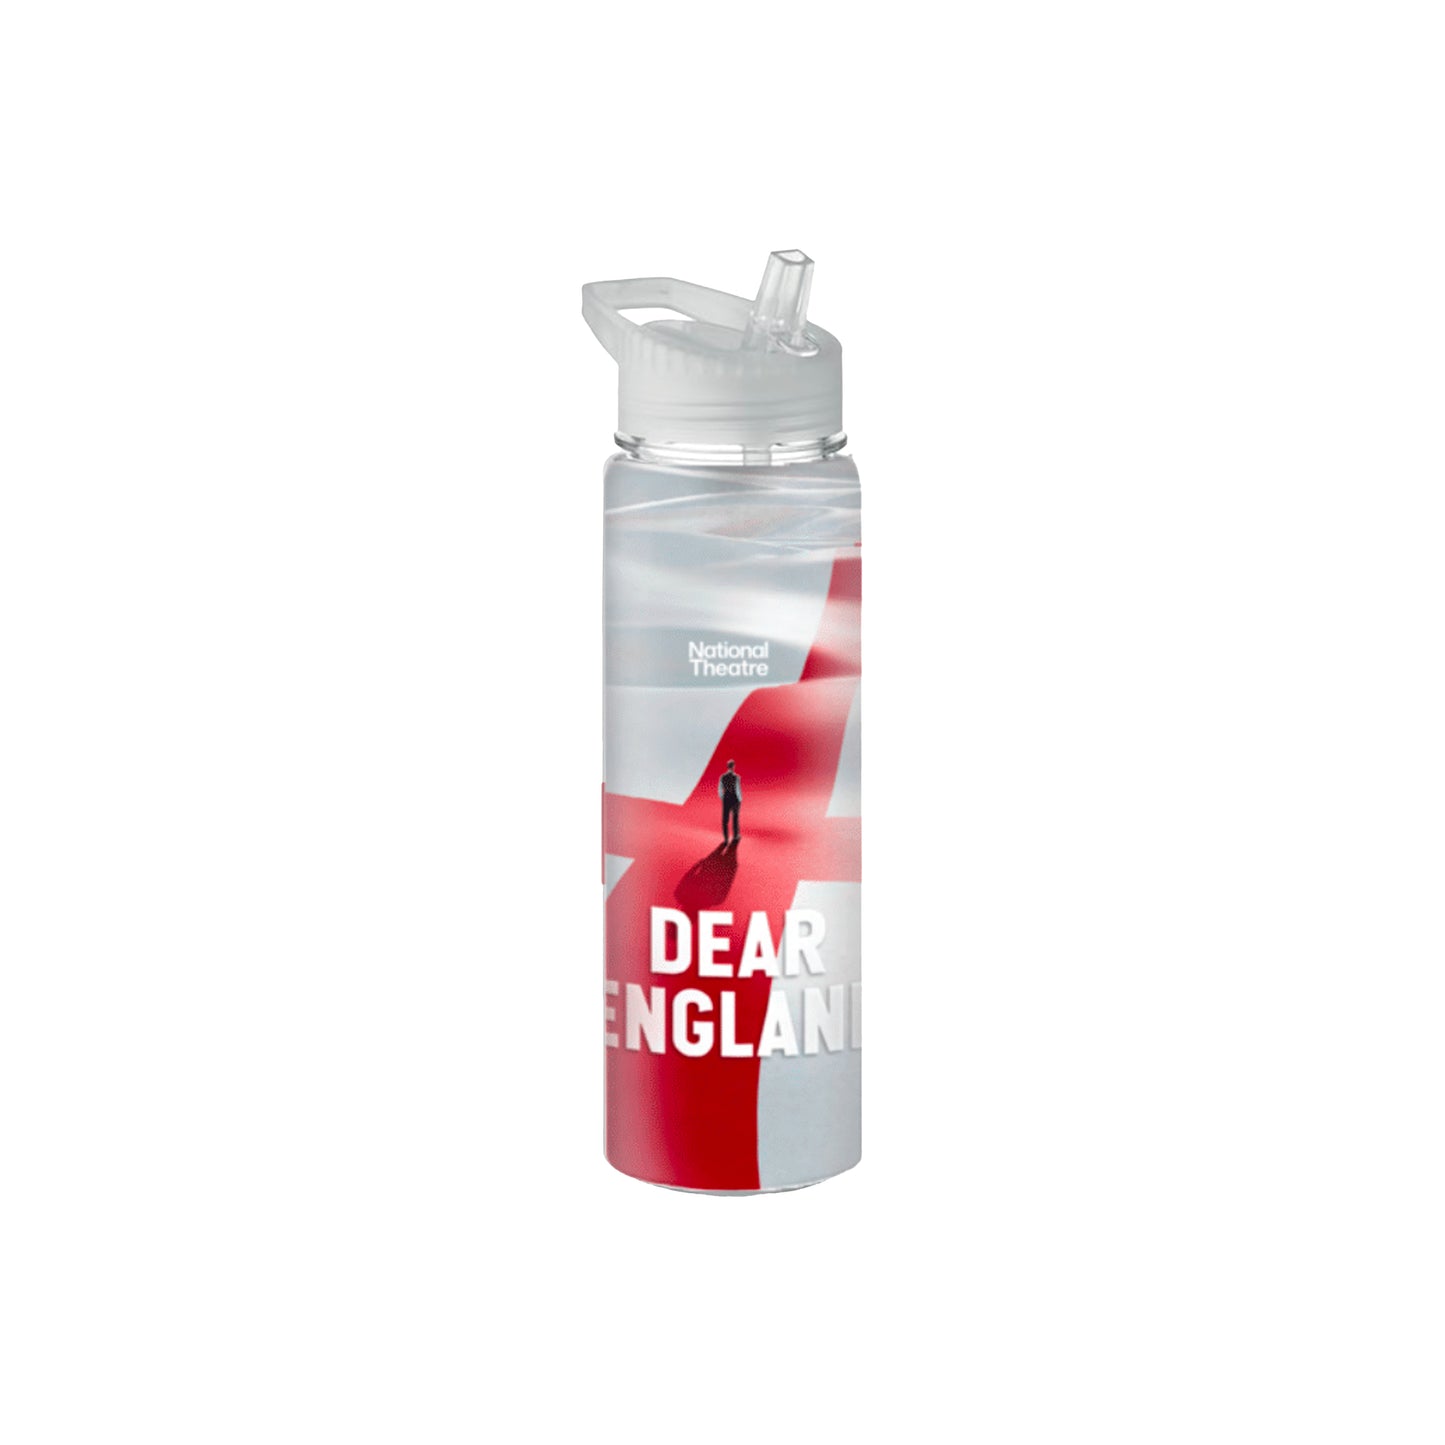 DEAR ENGLAND - Plastic Bottle